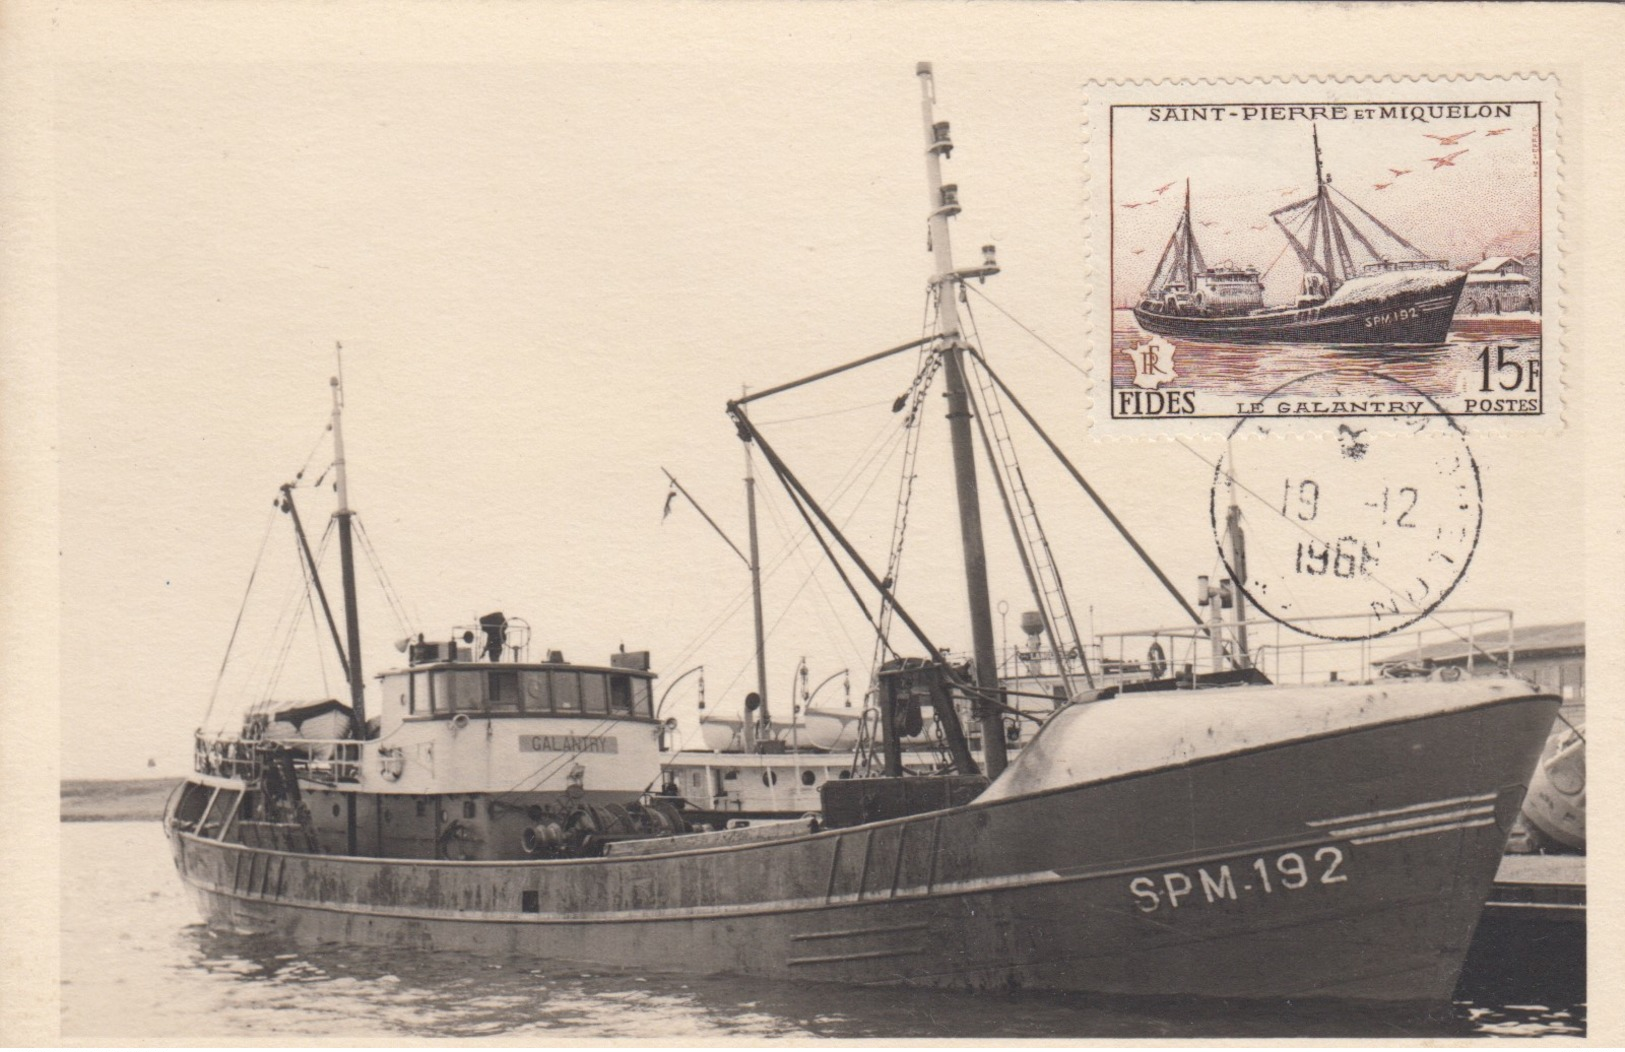 Saint-Pierre-et-Miquelon , 1966 ; Ship SPM-192 At Wharf & First Day Of Issue Stamp - Saint Pierre And Miquelon